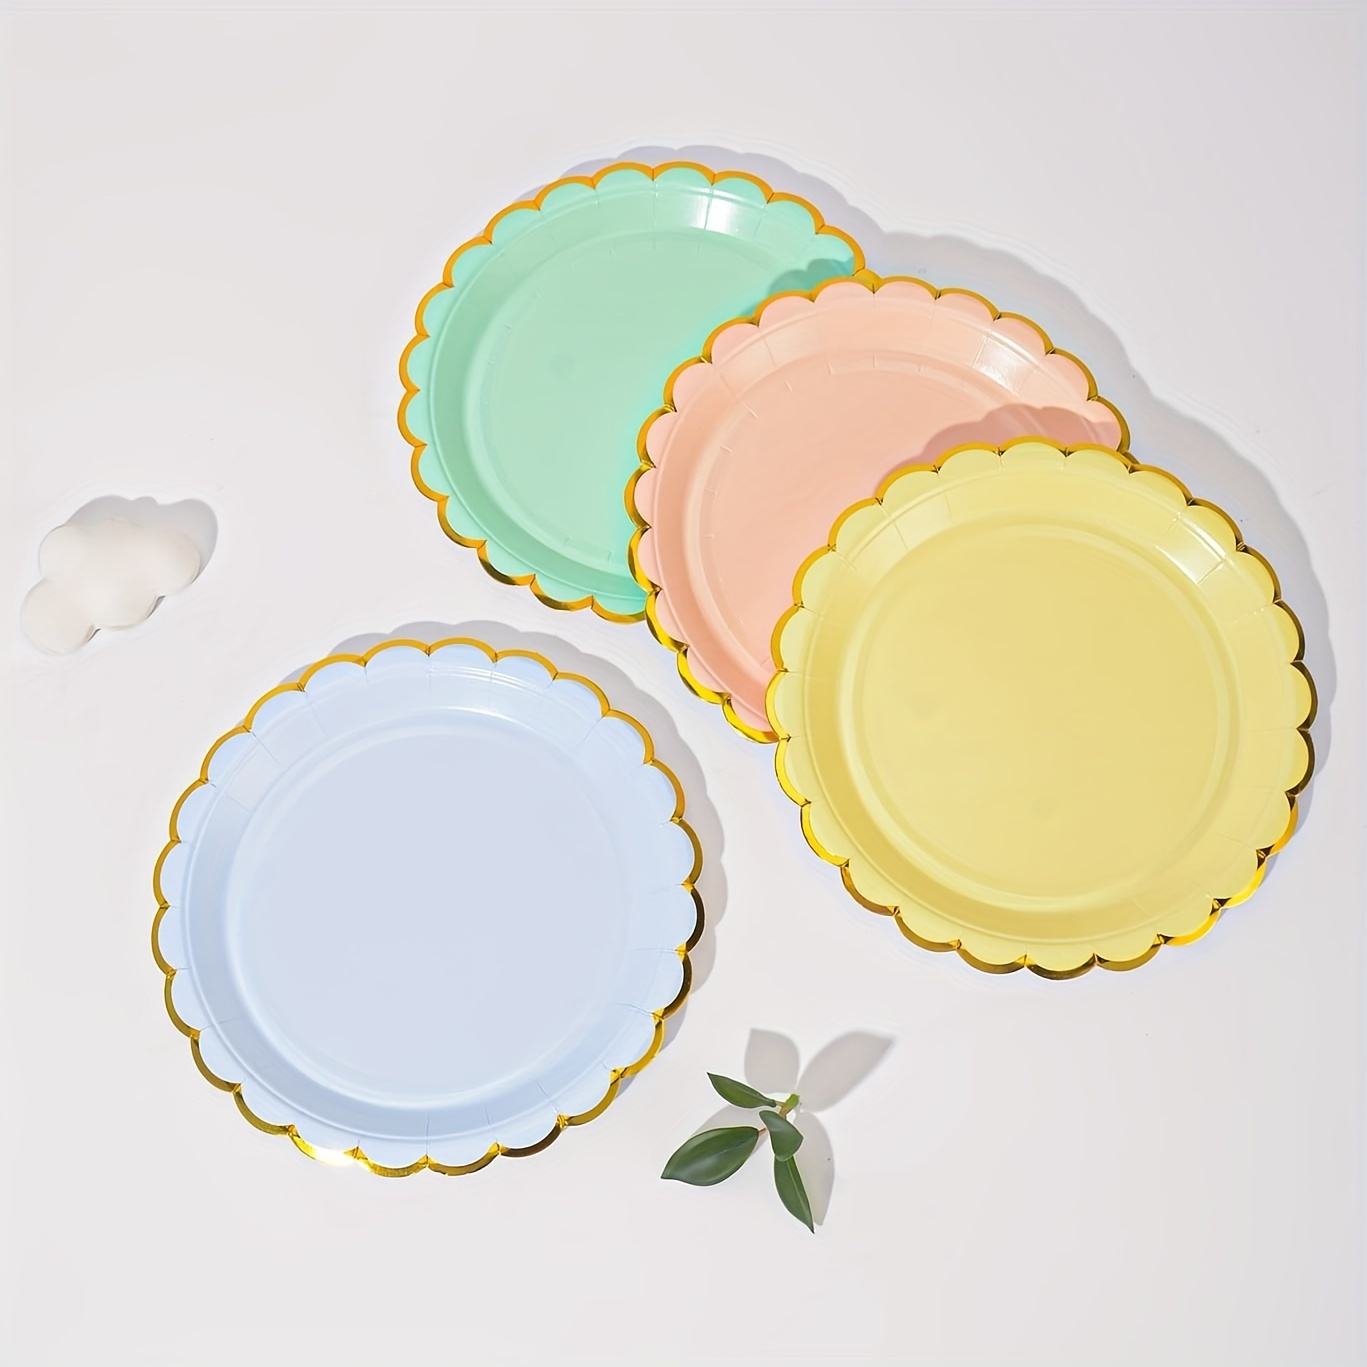 Amcrate Platos de papel color rosa, platos de papel desechables de 8 1/2  pulgadas, platos desechables fuertes y resistentes para fiestas, cenas